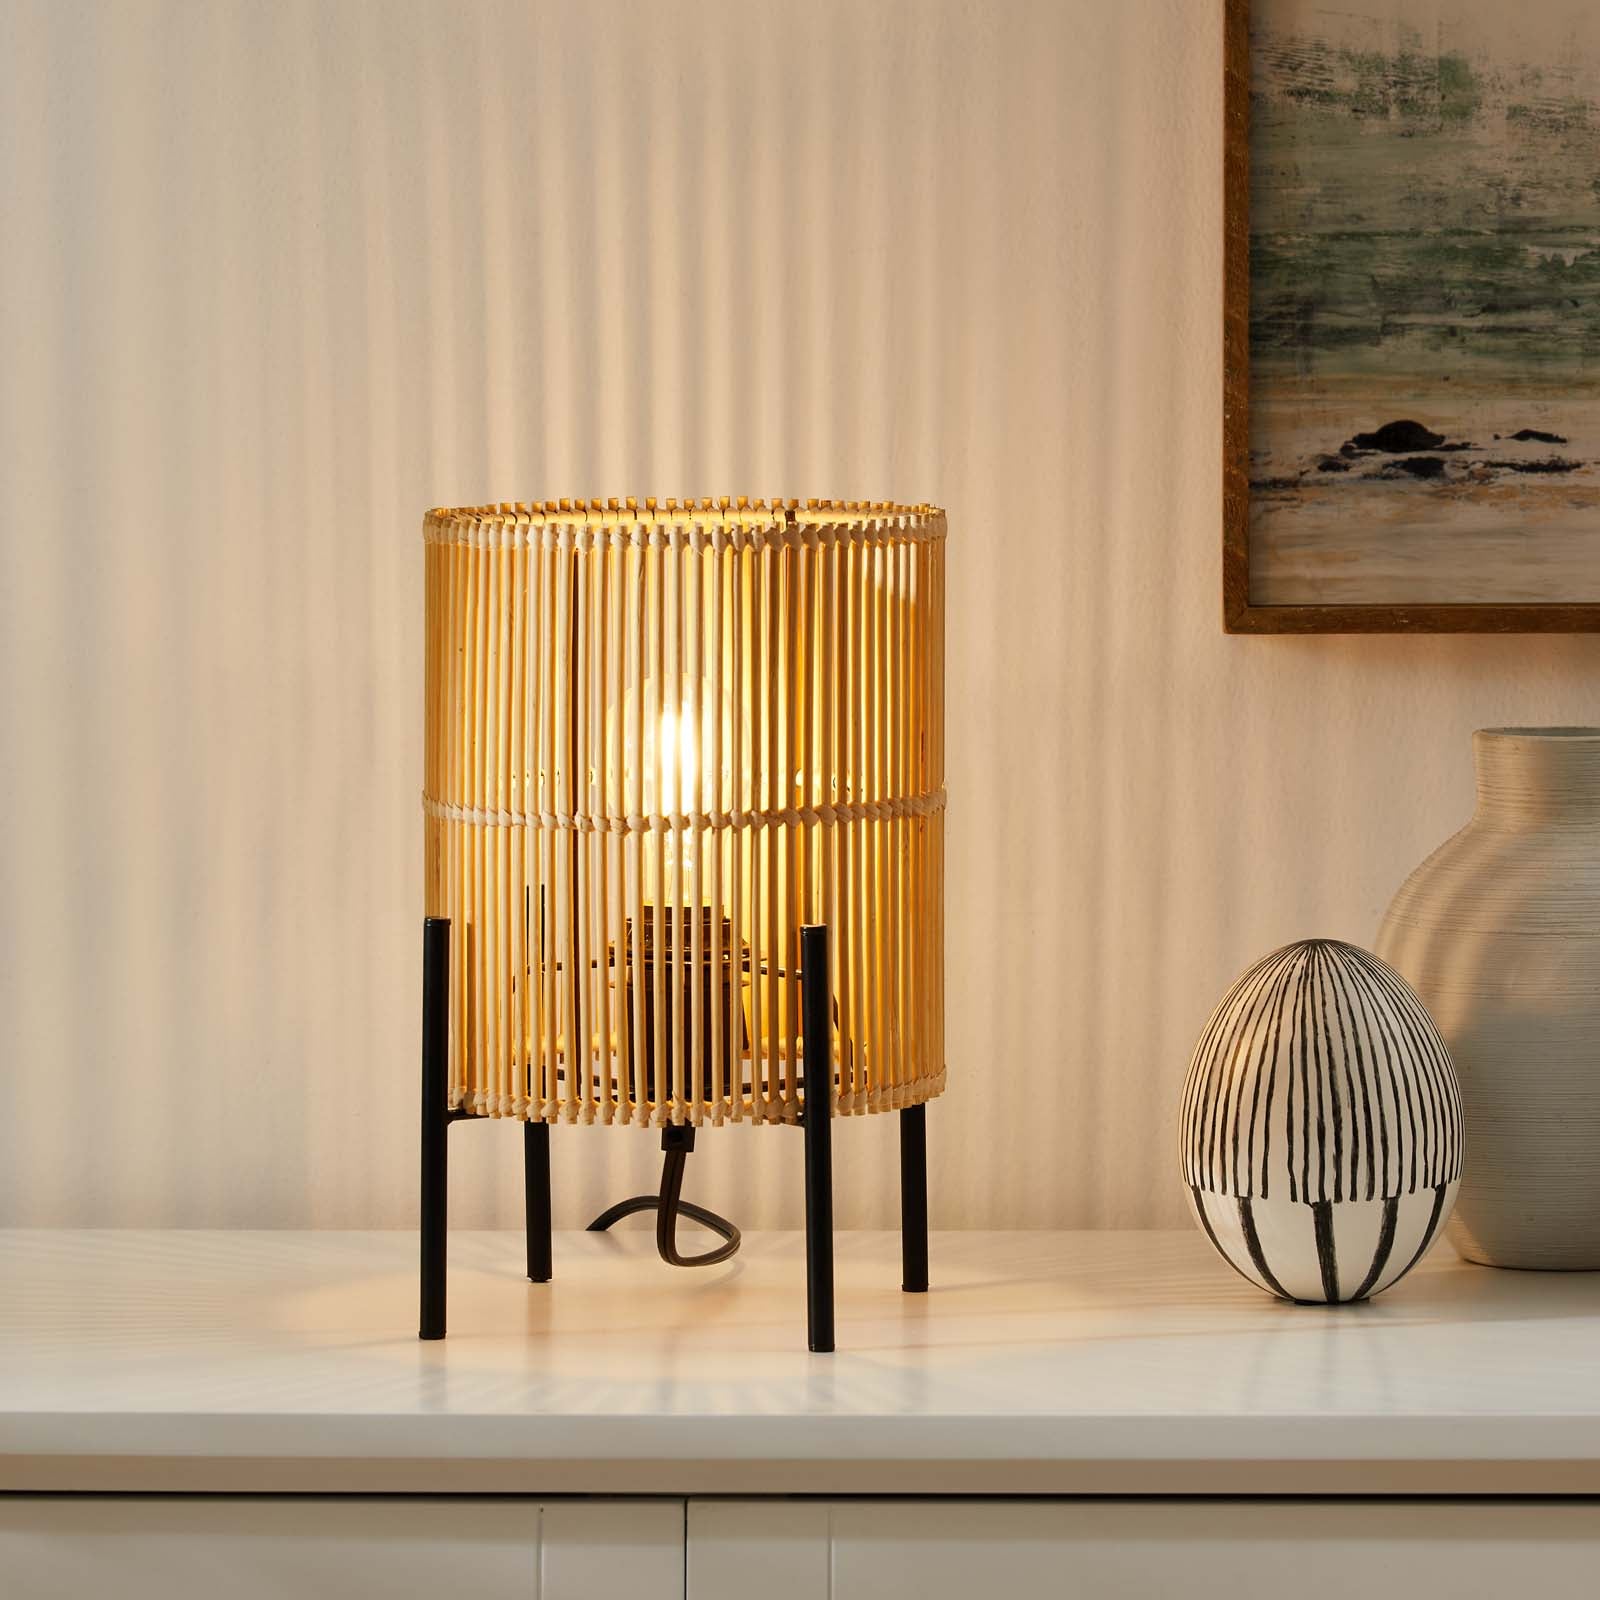 Casen Bamboo Table Lamp - East Shore Modern Home Furnishings